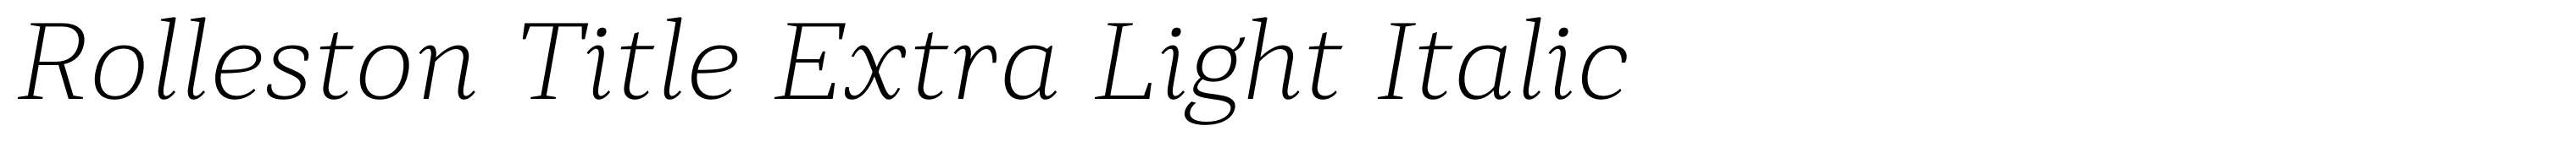 Rolleston Title Extra Light Italic